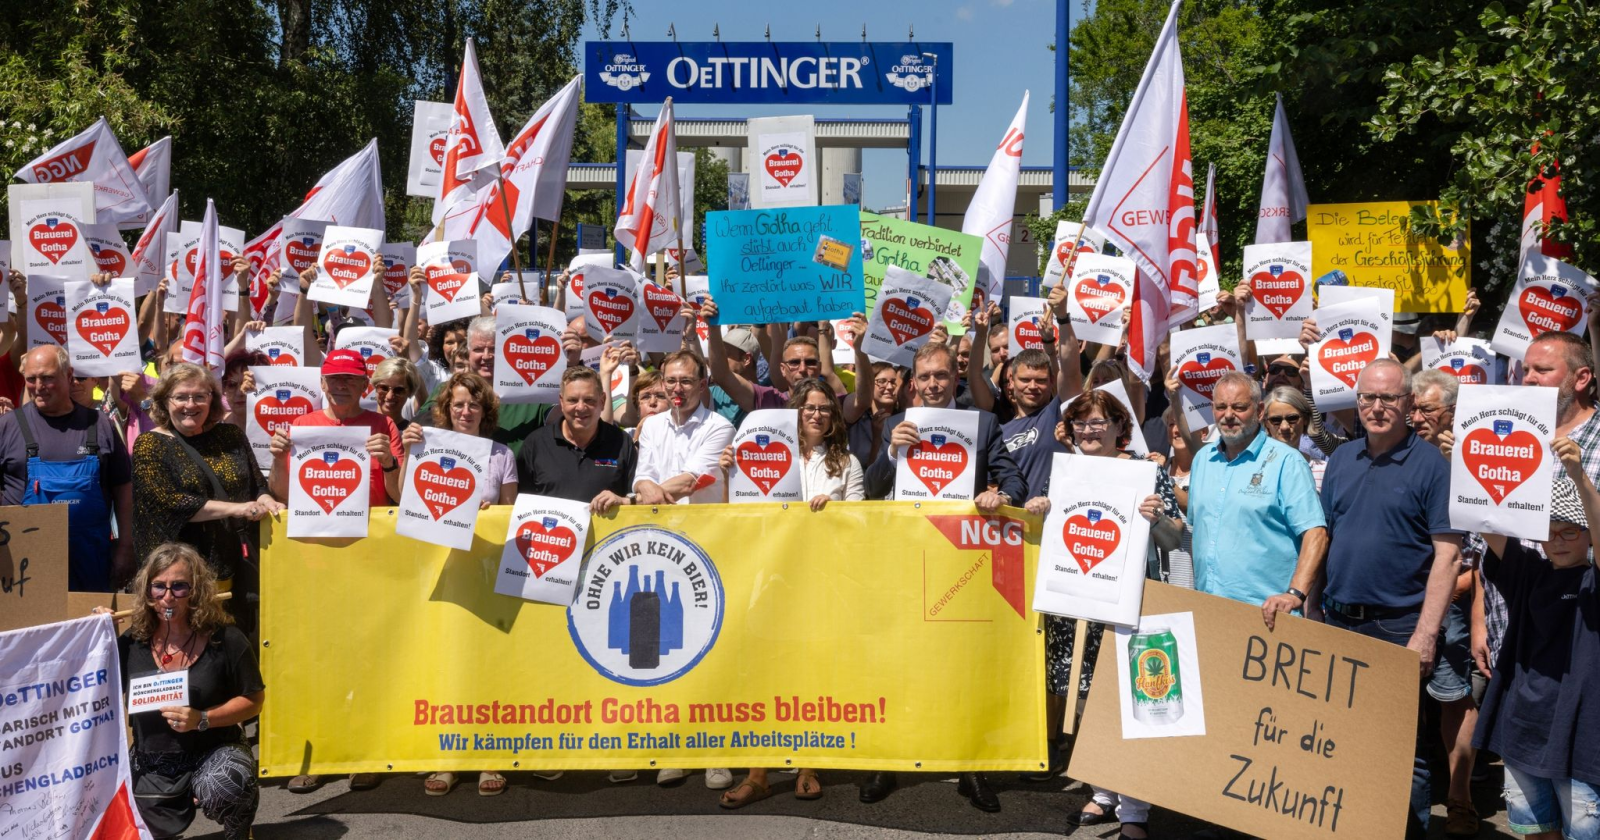 Mitarbeiter und Gewerkschafter demonstrieren vor dem Werktor für den Erhalt der Arbeitsplätze der Oettinger-Brauerei.